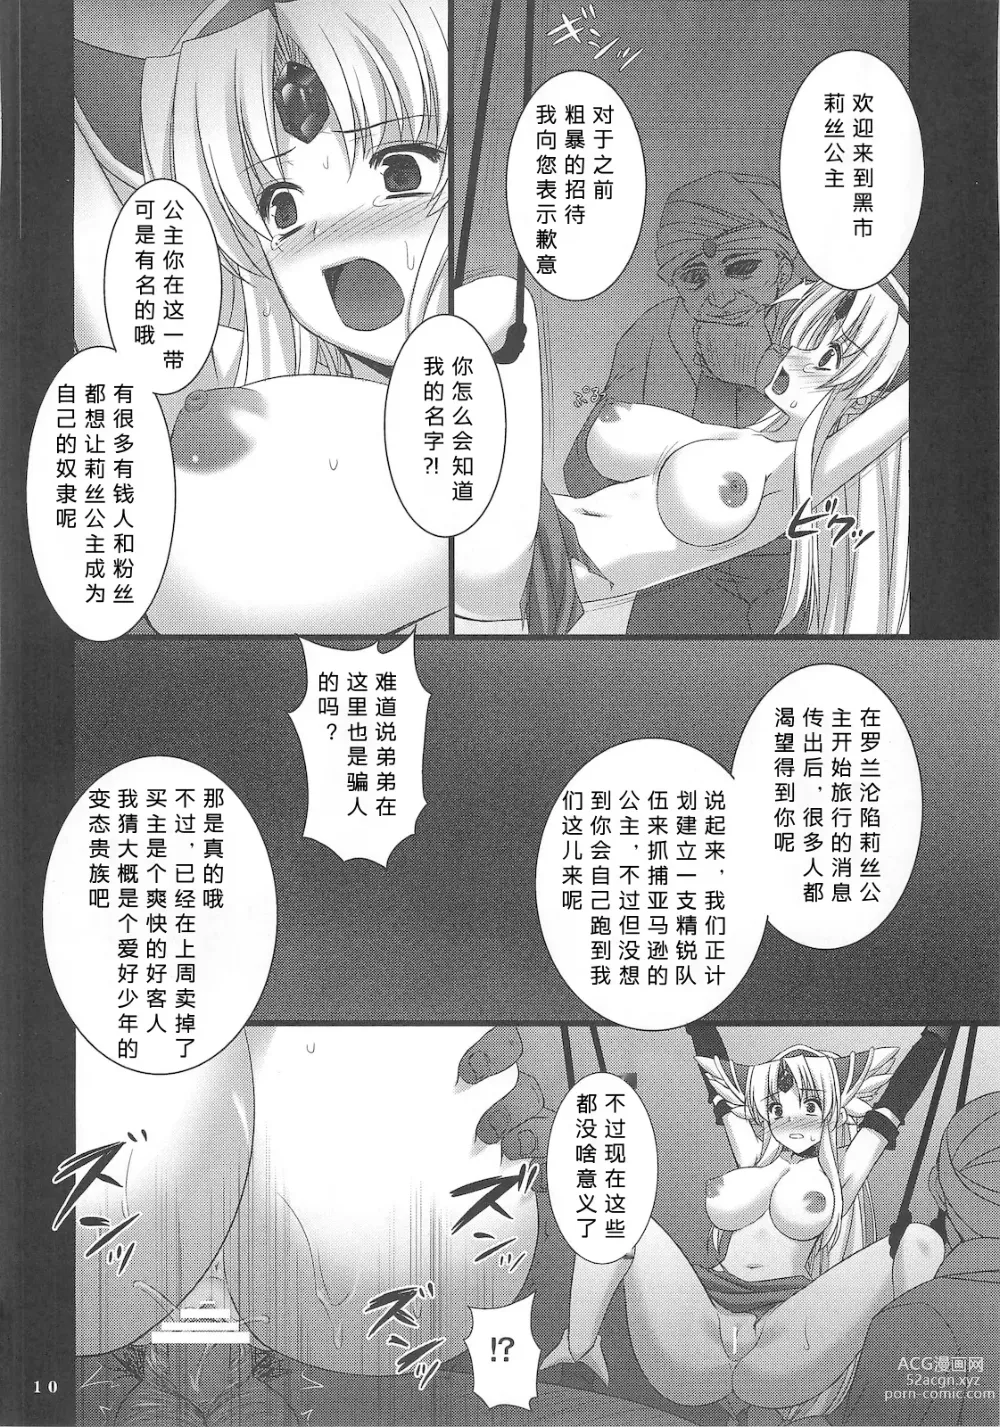 Page 11 of doujinshi Saitei Rakusatsu Kakaku